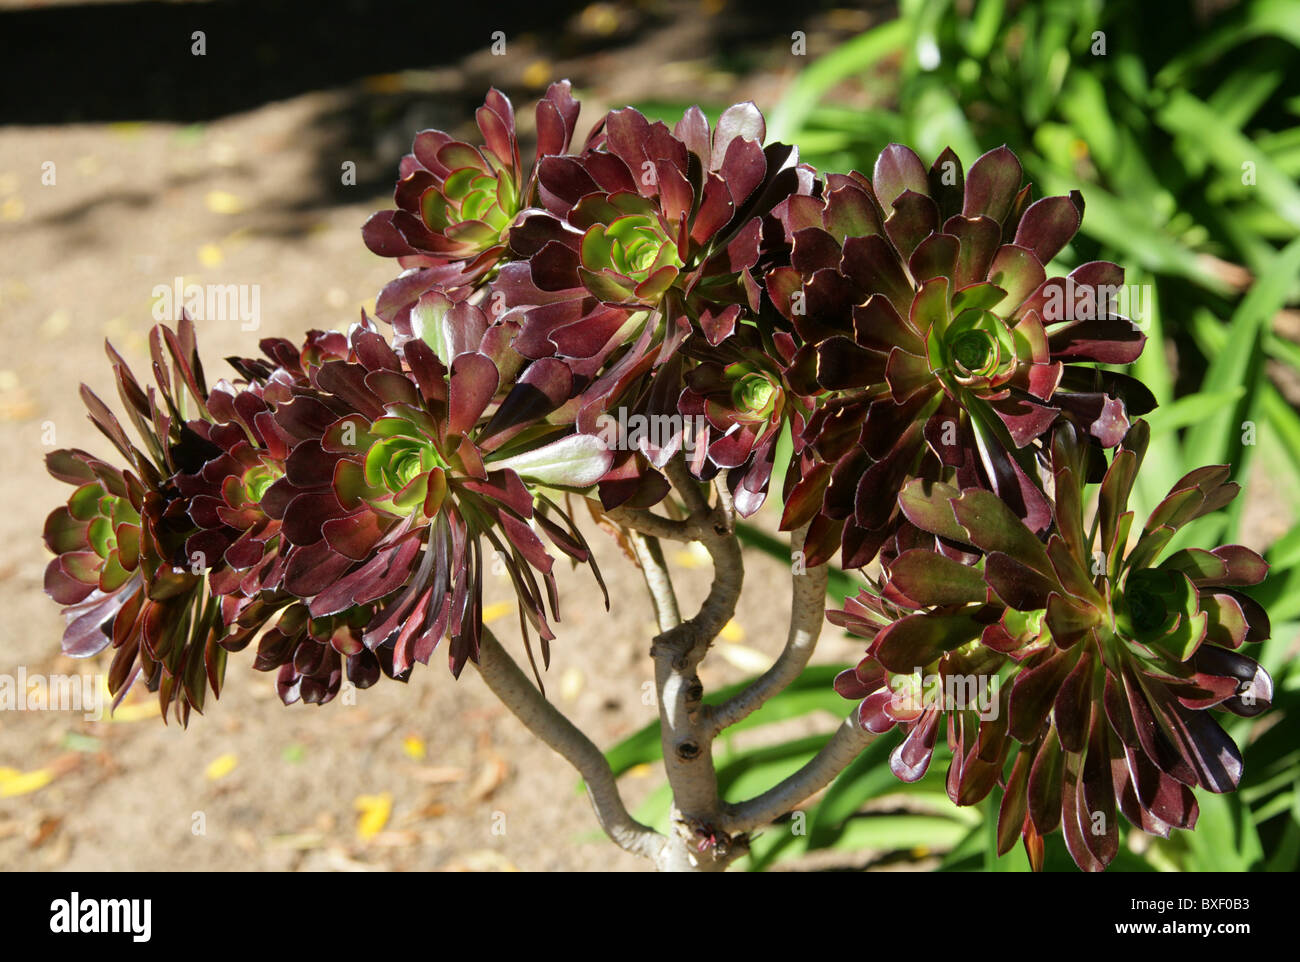 Viola Aeonium cresta o albero nero Aeonium, Aeonium arboreum var atropurpureum, Marocco, Africa del Nord Foto Stock